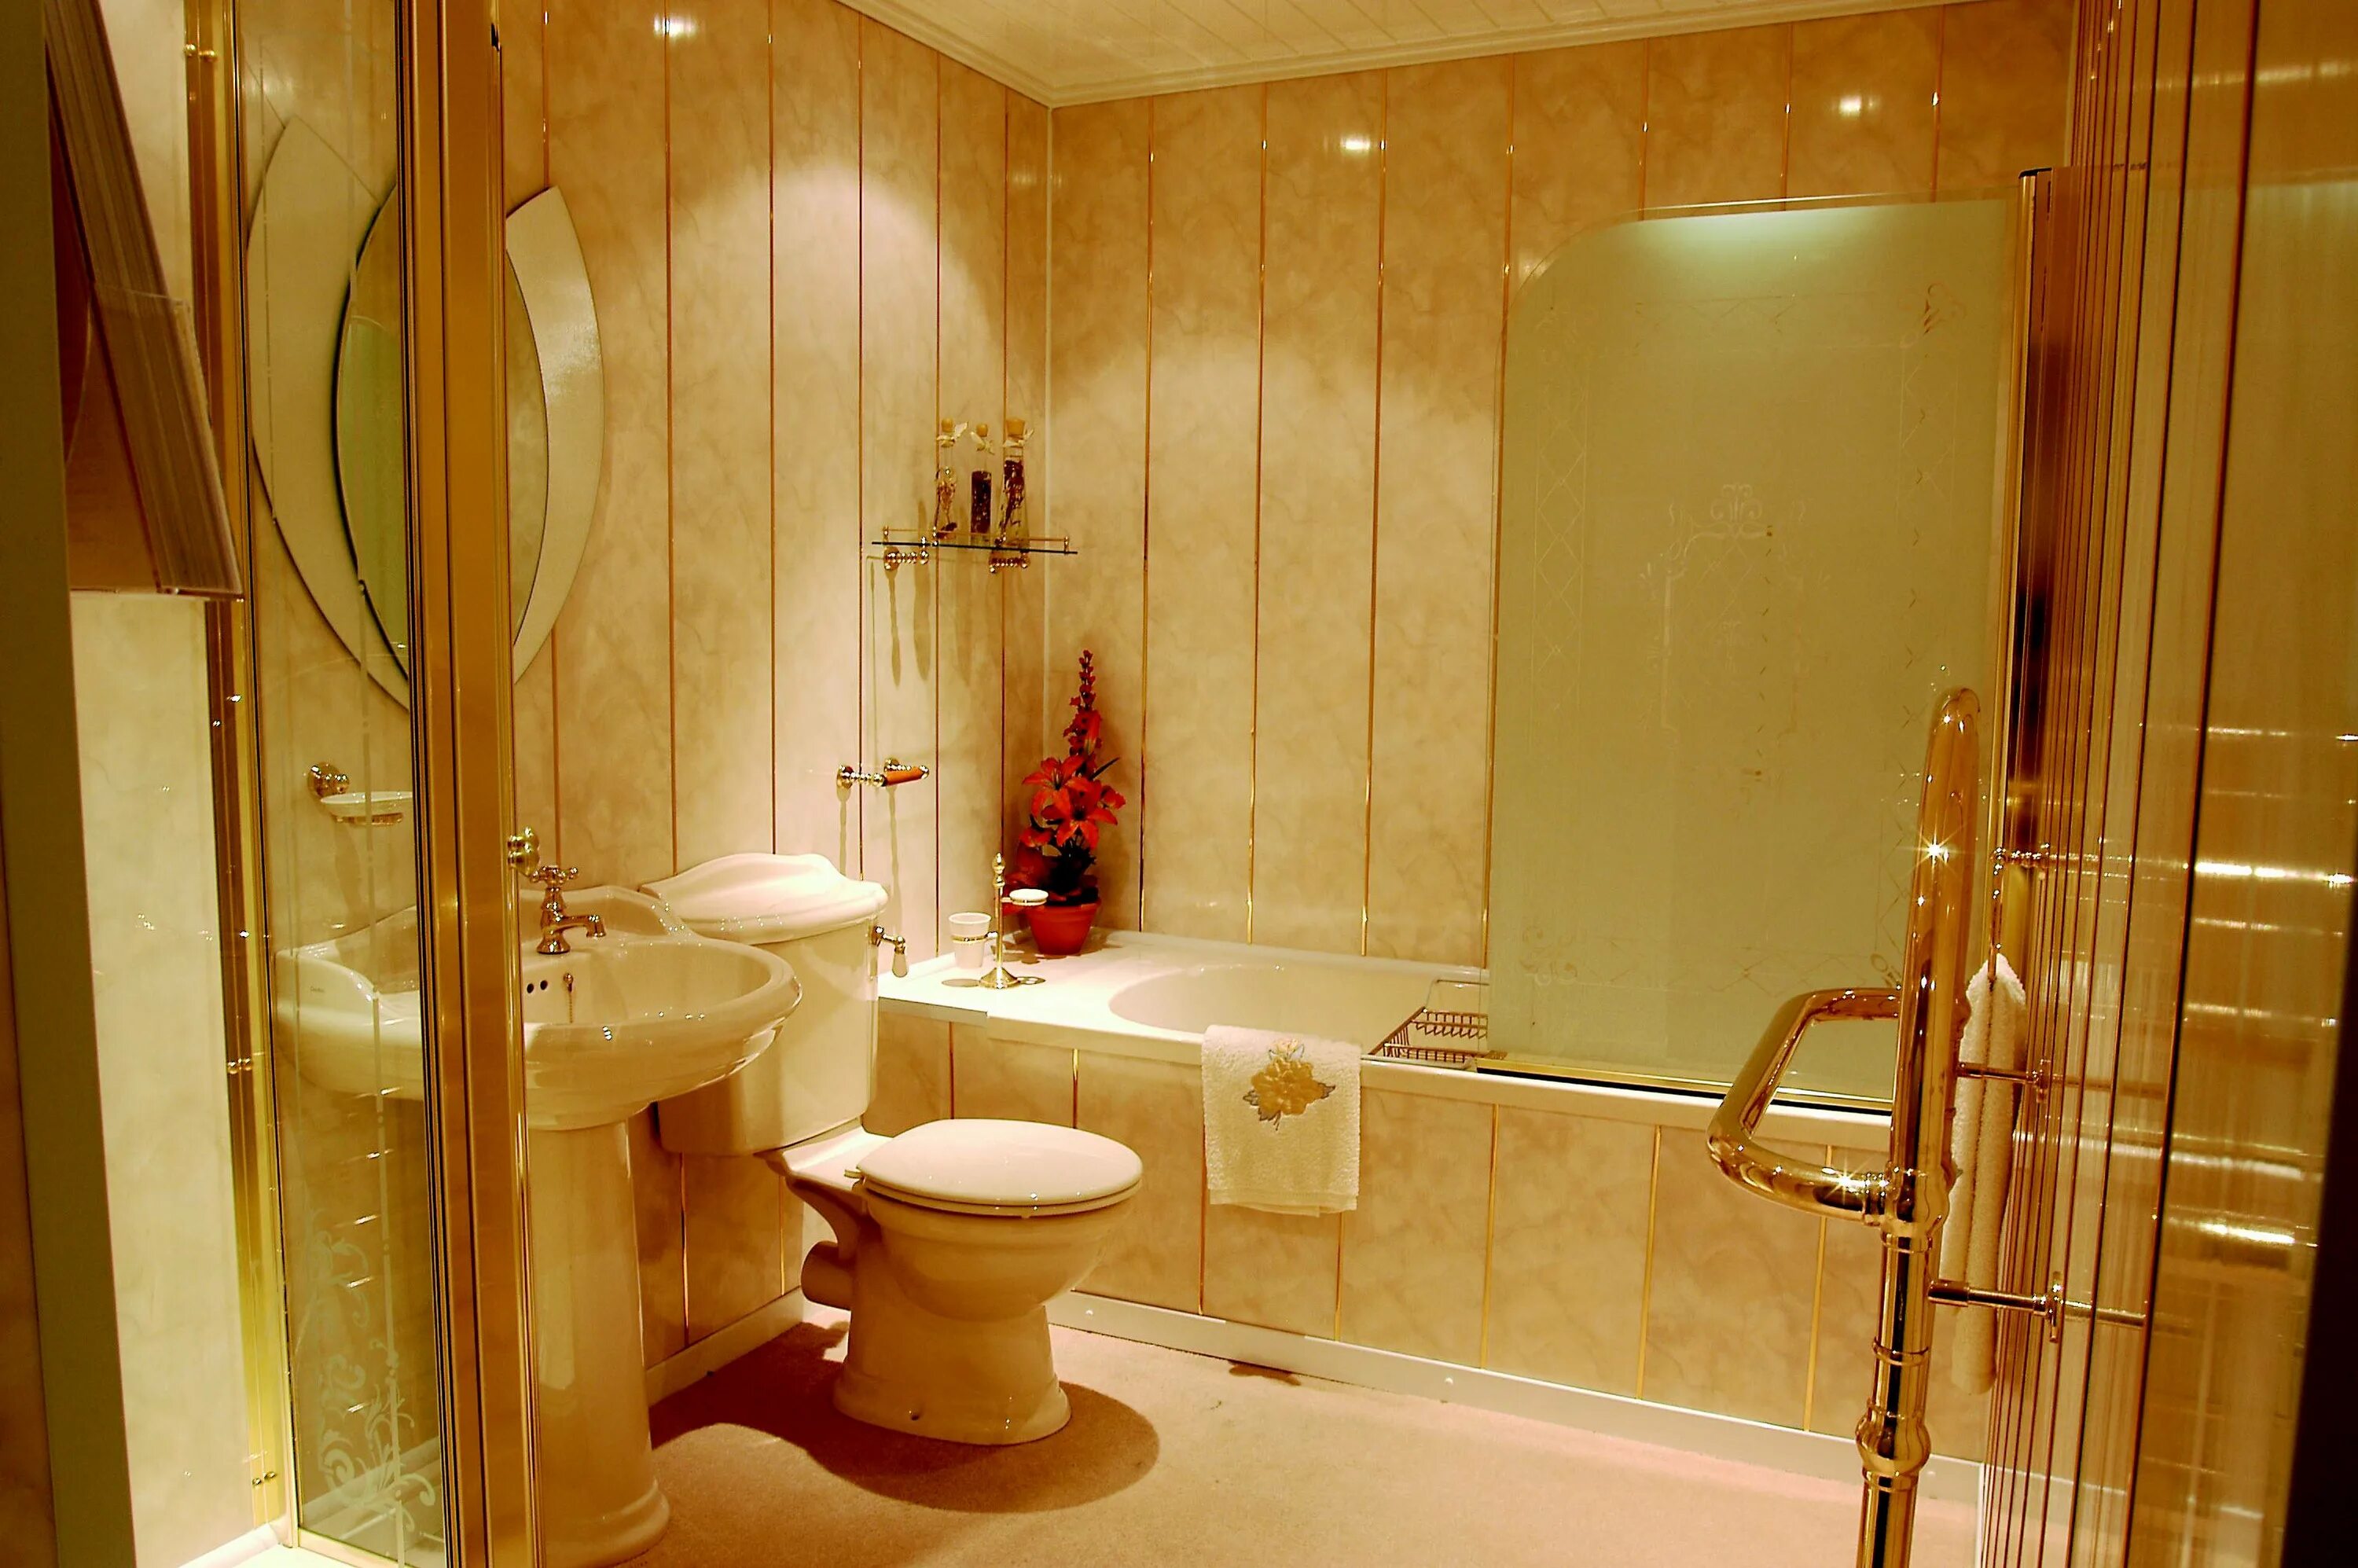 Панели для ванной комнаты. Отделка ванной панелями ПВХ. Ванная отделанная пластиковыми панелями. Отделка ванной комнаты пластиком. Сделать ванную панелями пвх